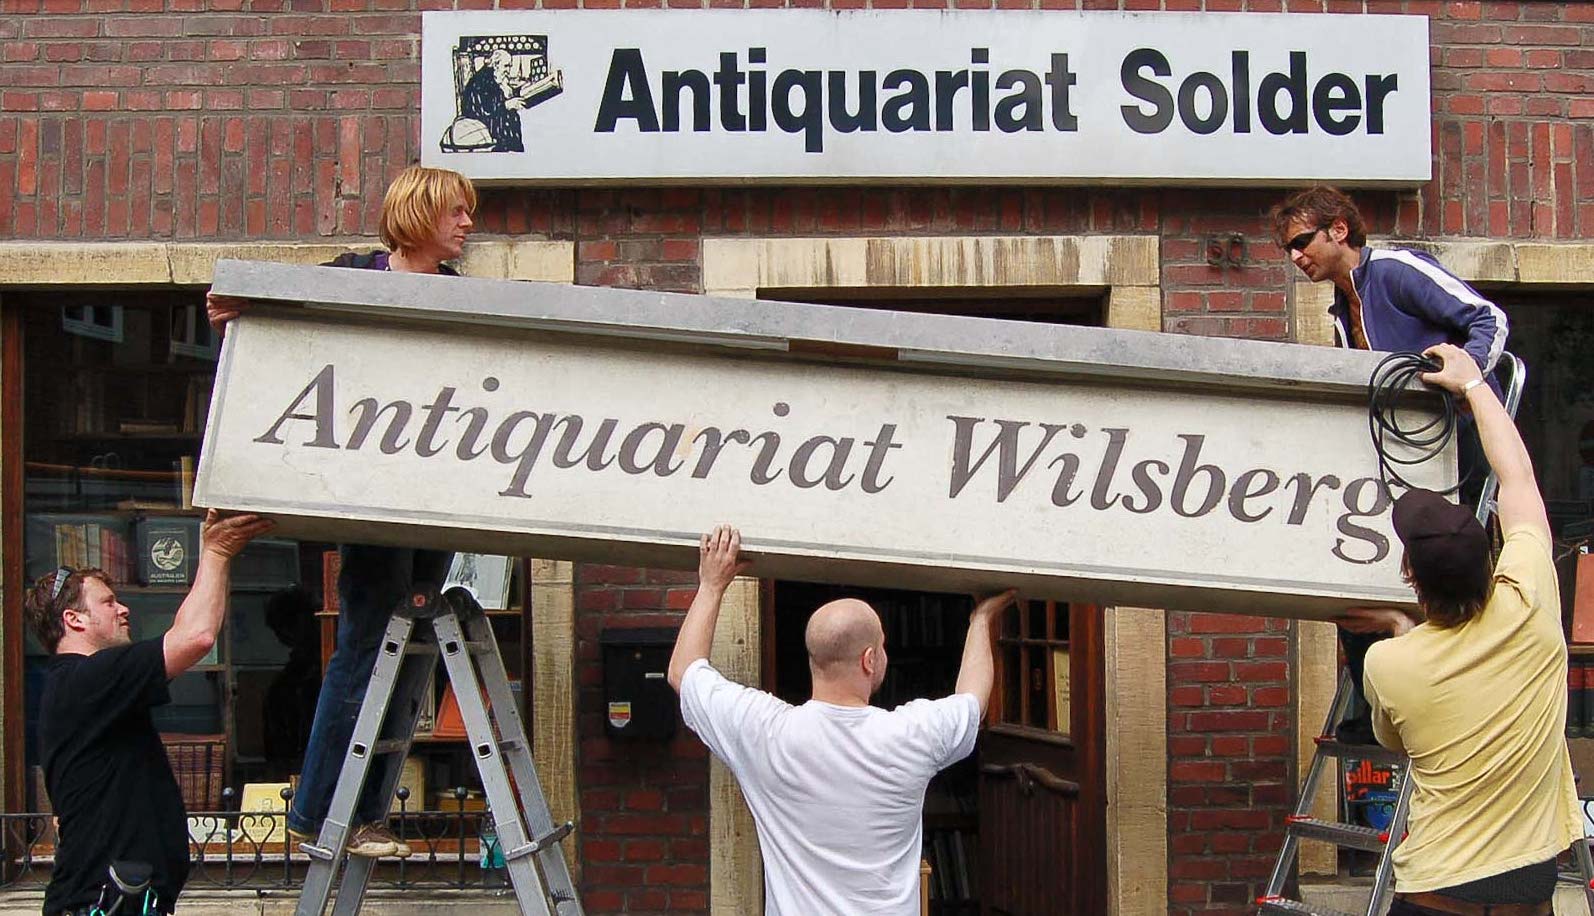 Beliebter Drehort für die Wilsberg-Filme: das Antiquariat Solder. (Foto: Antiquariat Solder)